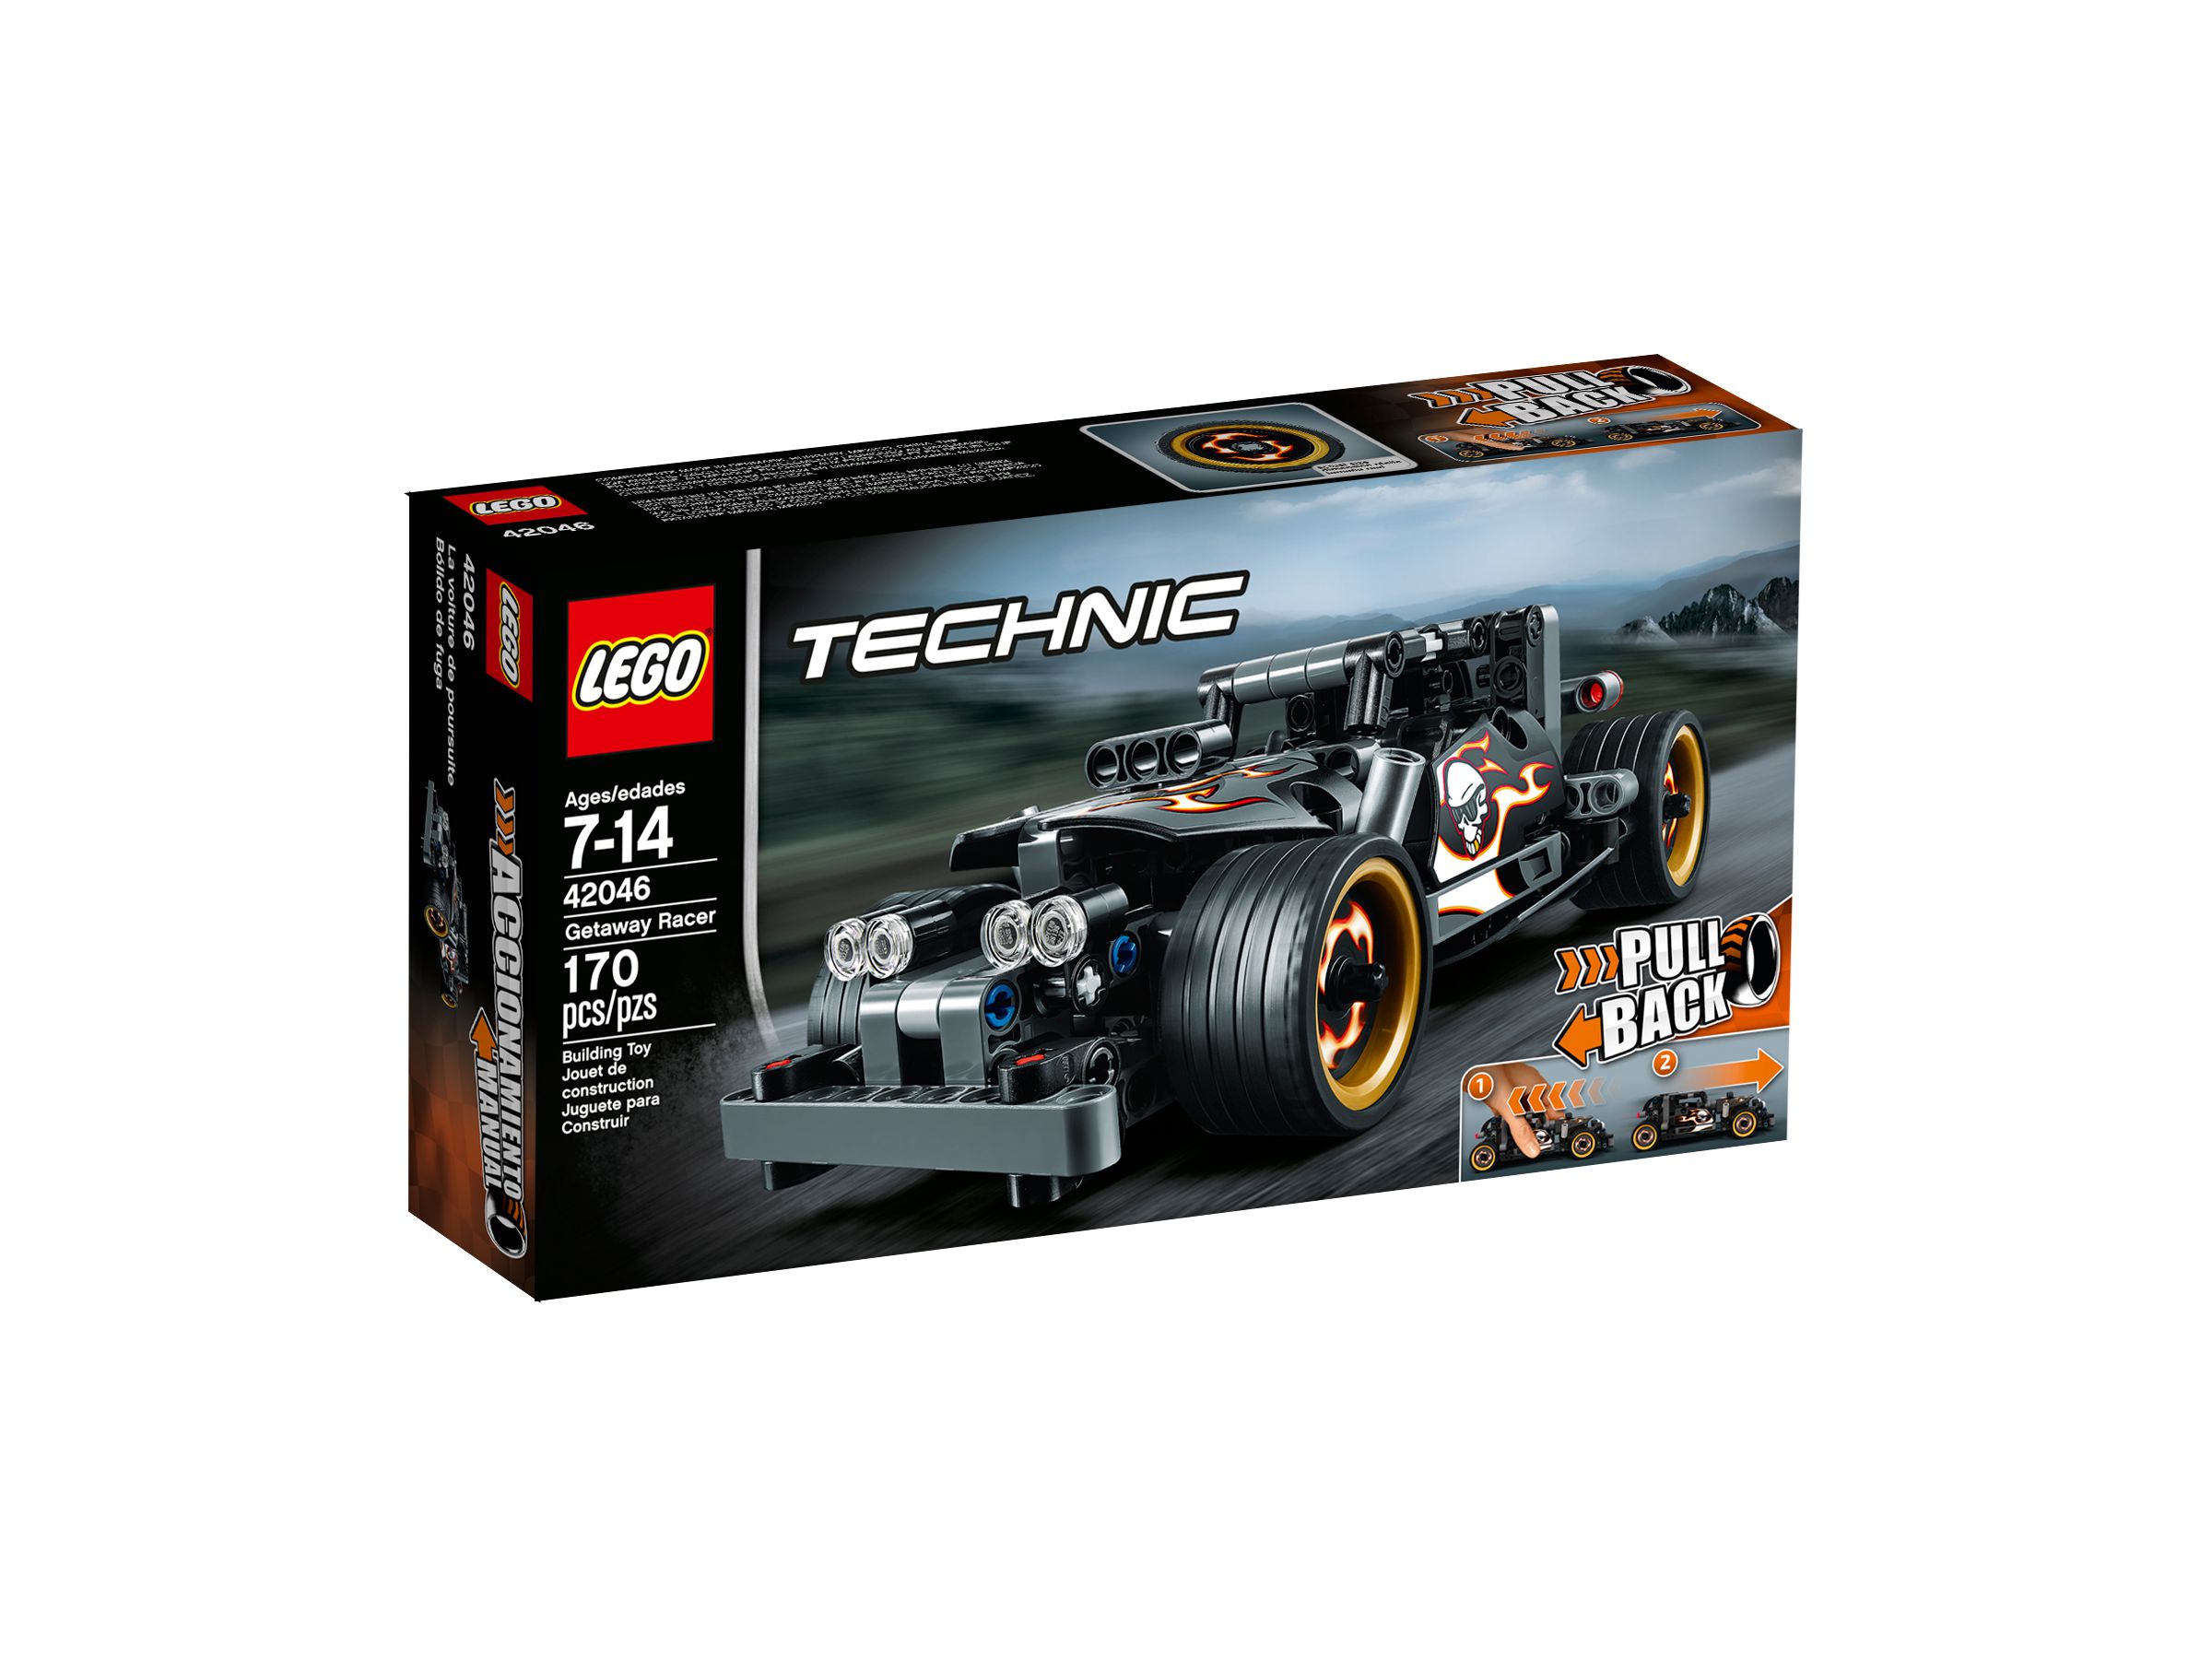 LEGO Technic 42046 Fluchtfahrzeug LEGO_42046_alt1.jpg